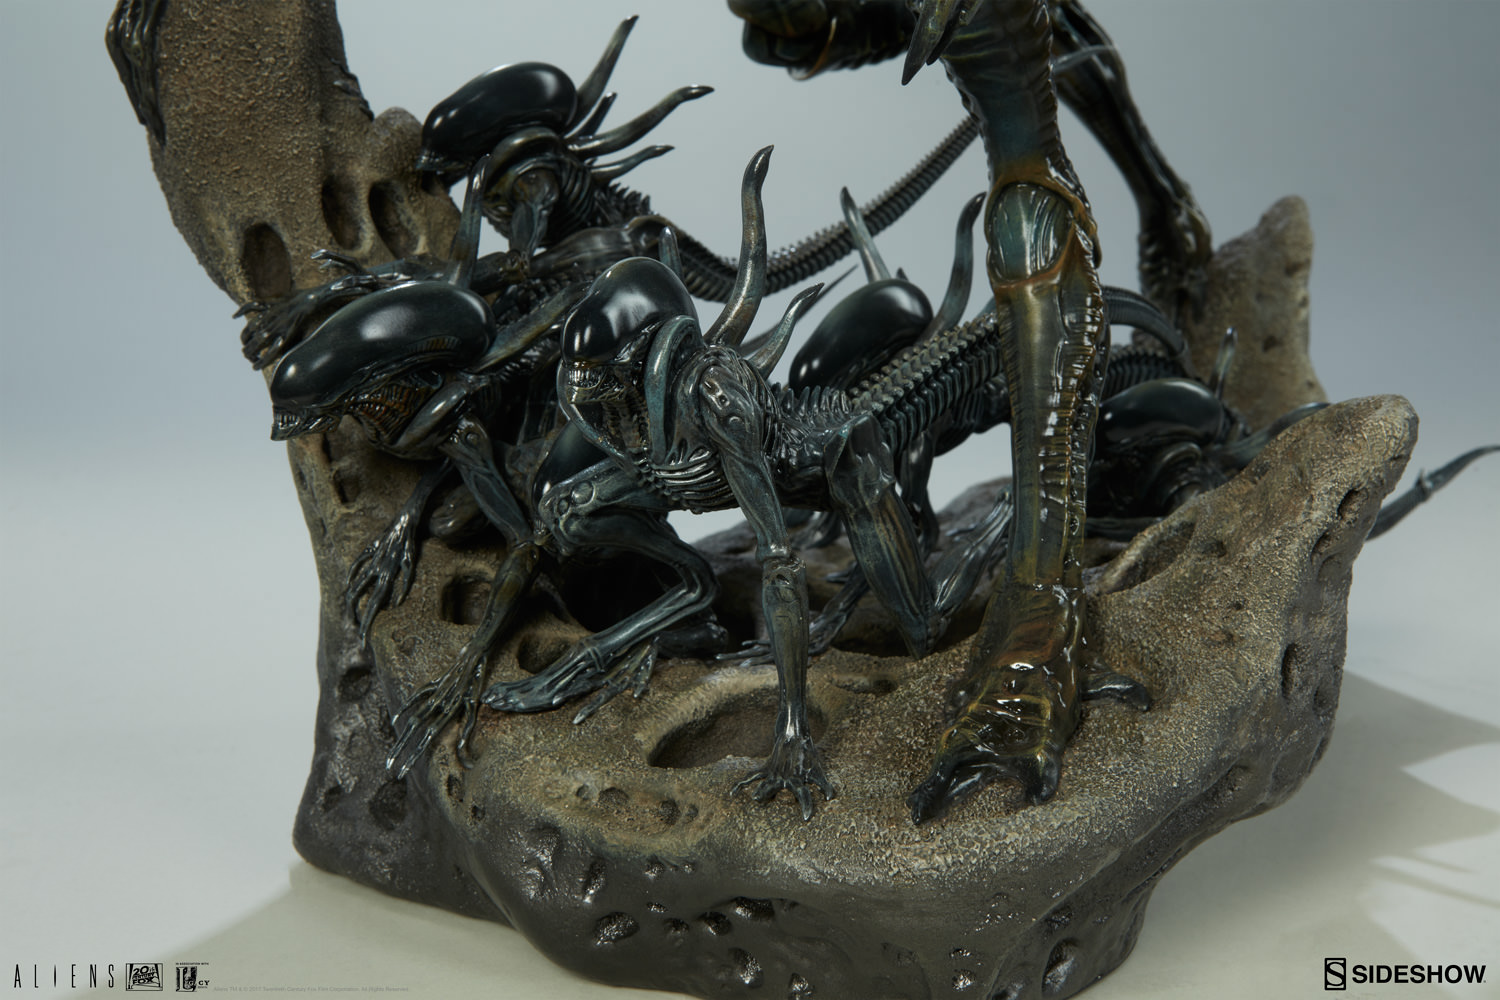 aliens-alien-king-maquette-200333-15.jpg